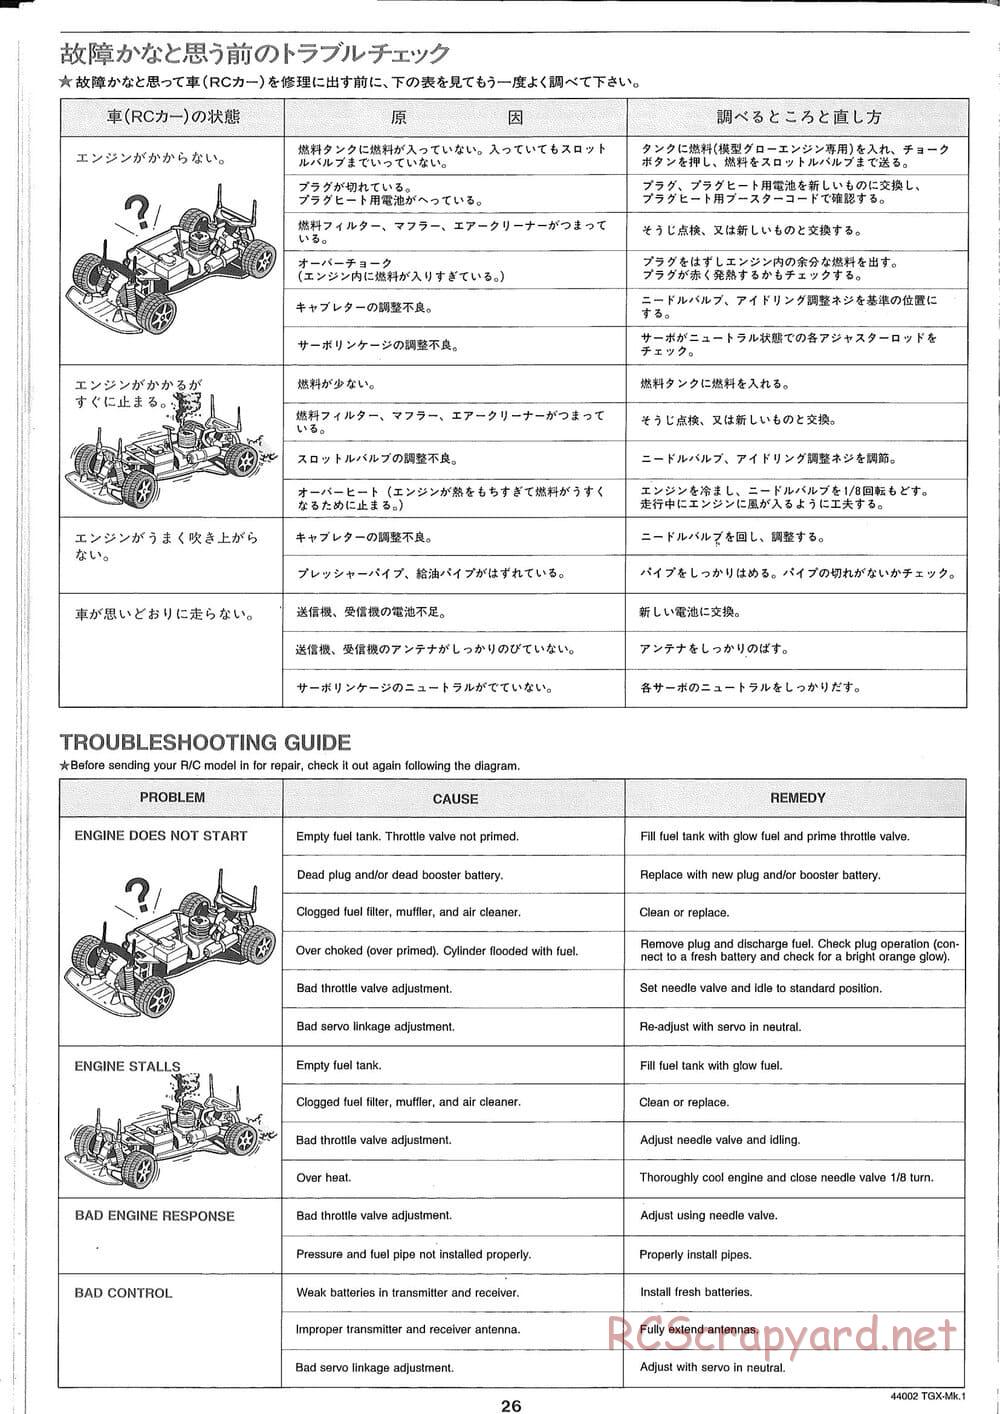 Tamiya - TGX Mk.1 TS Chassis Chassis - Manual - Page 26